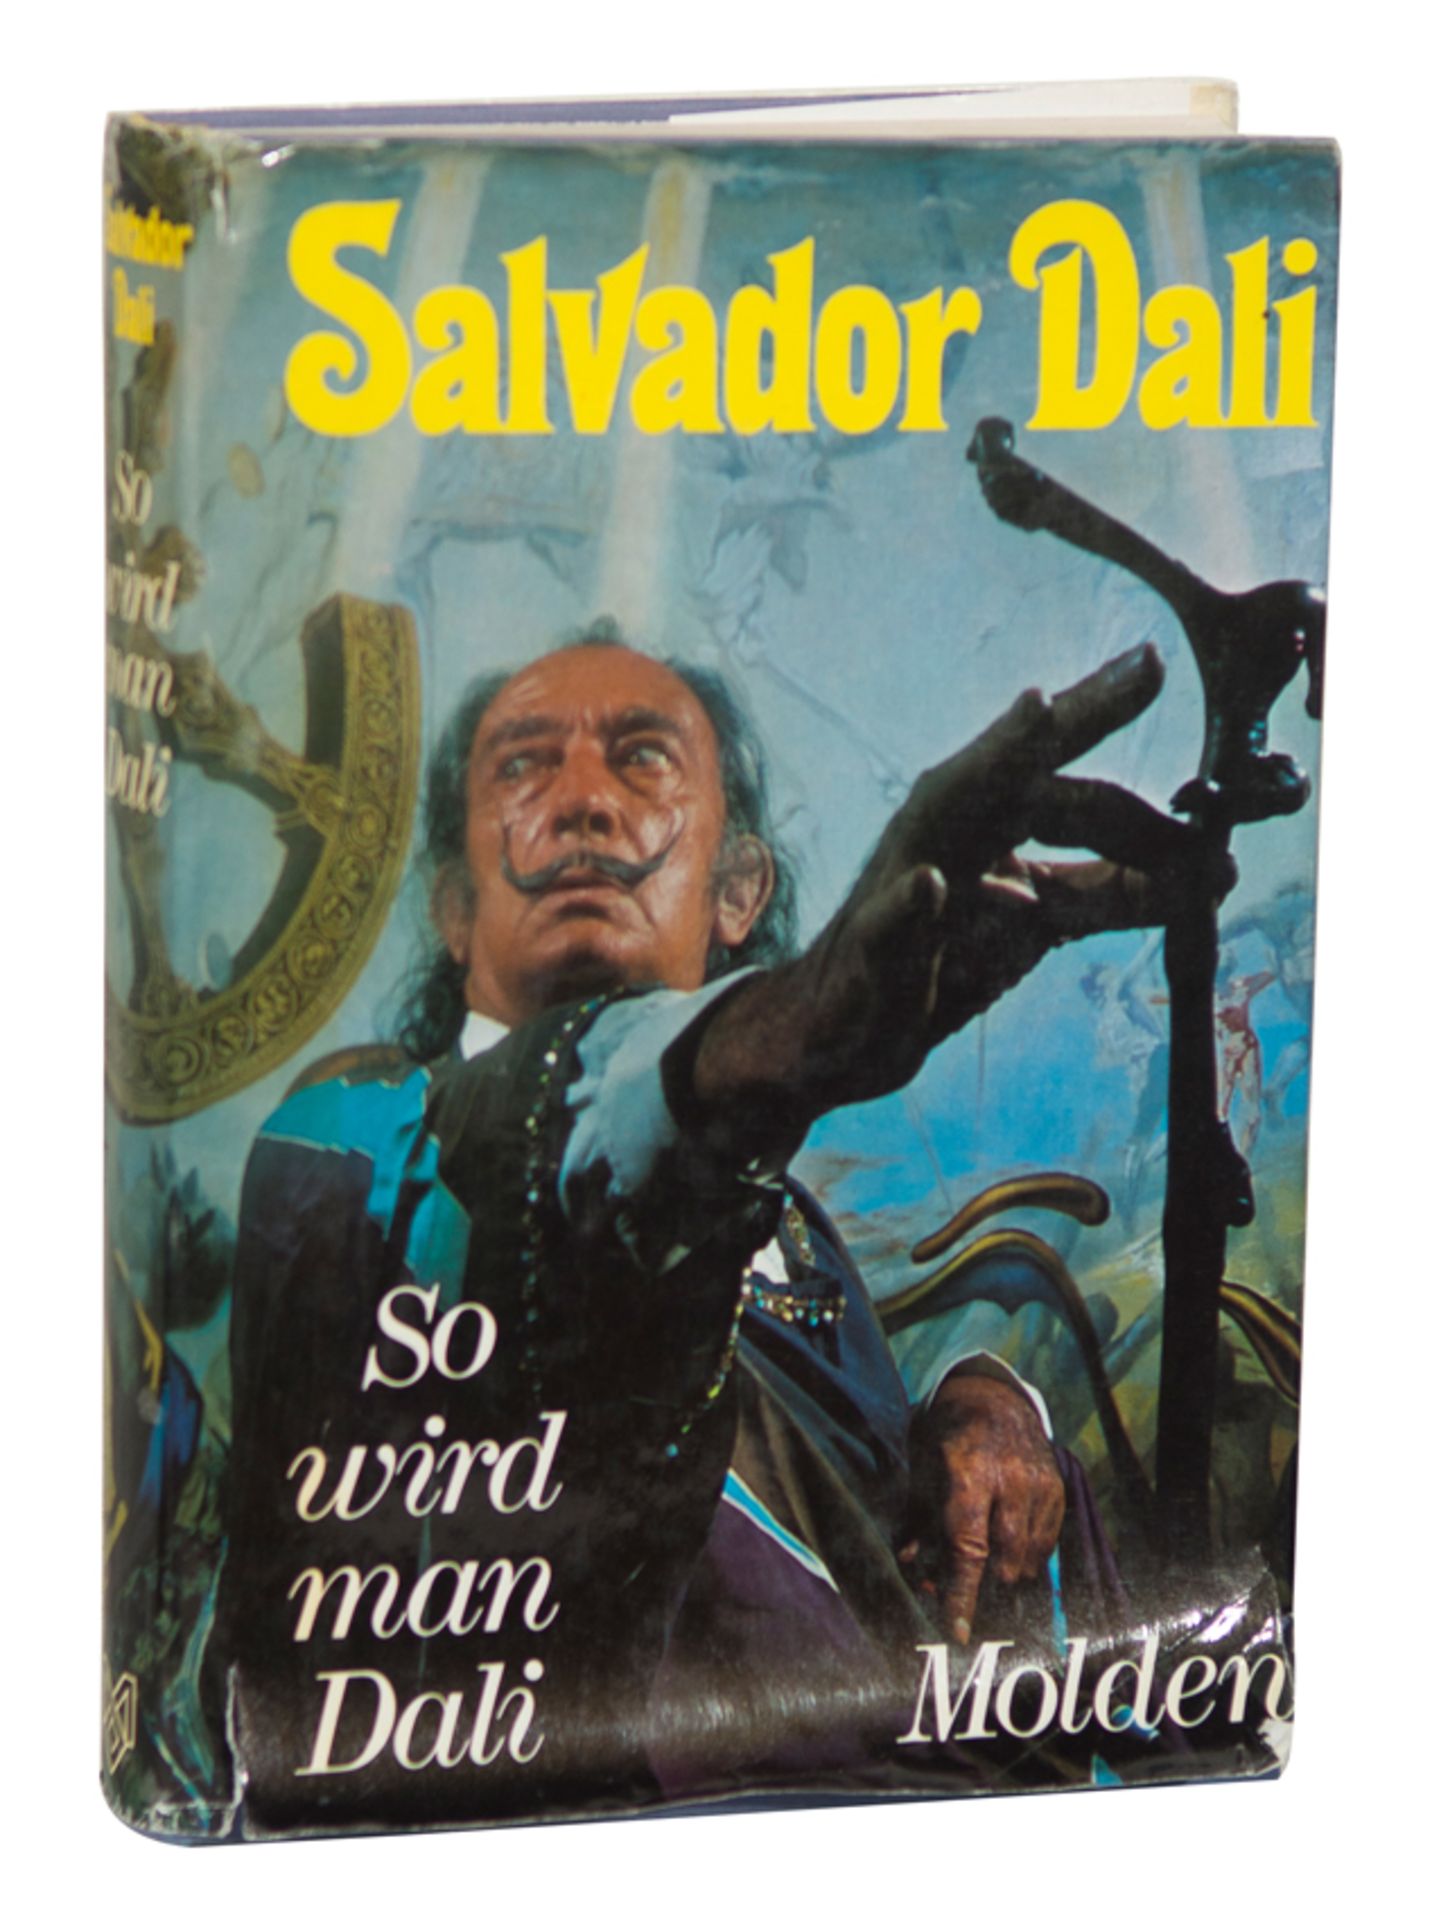 Salvador Dalí (Figueres, 1904 - 1989) - Bild 2 aus 2